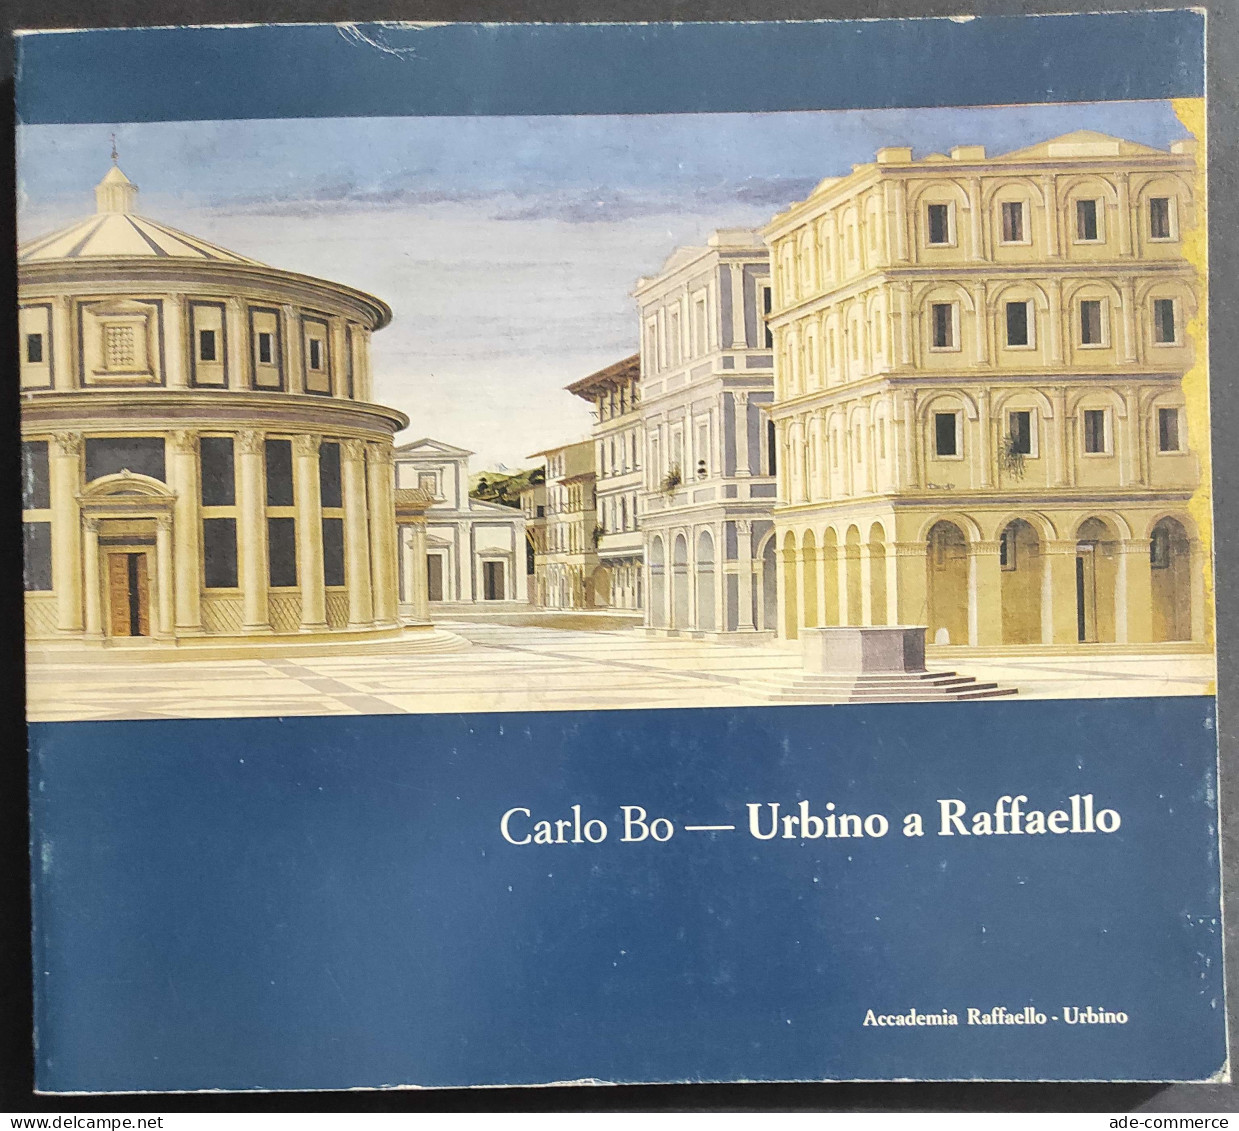 Urbino A Raffaello - C. Bo - 1985 - Accademia Raffaello Urbino 1984                                                      - Arte, Antigüedades